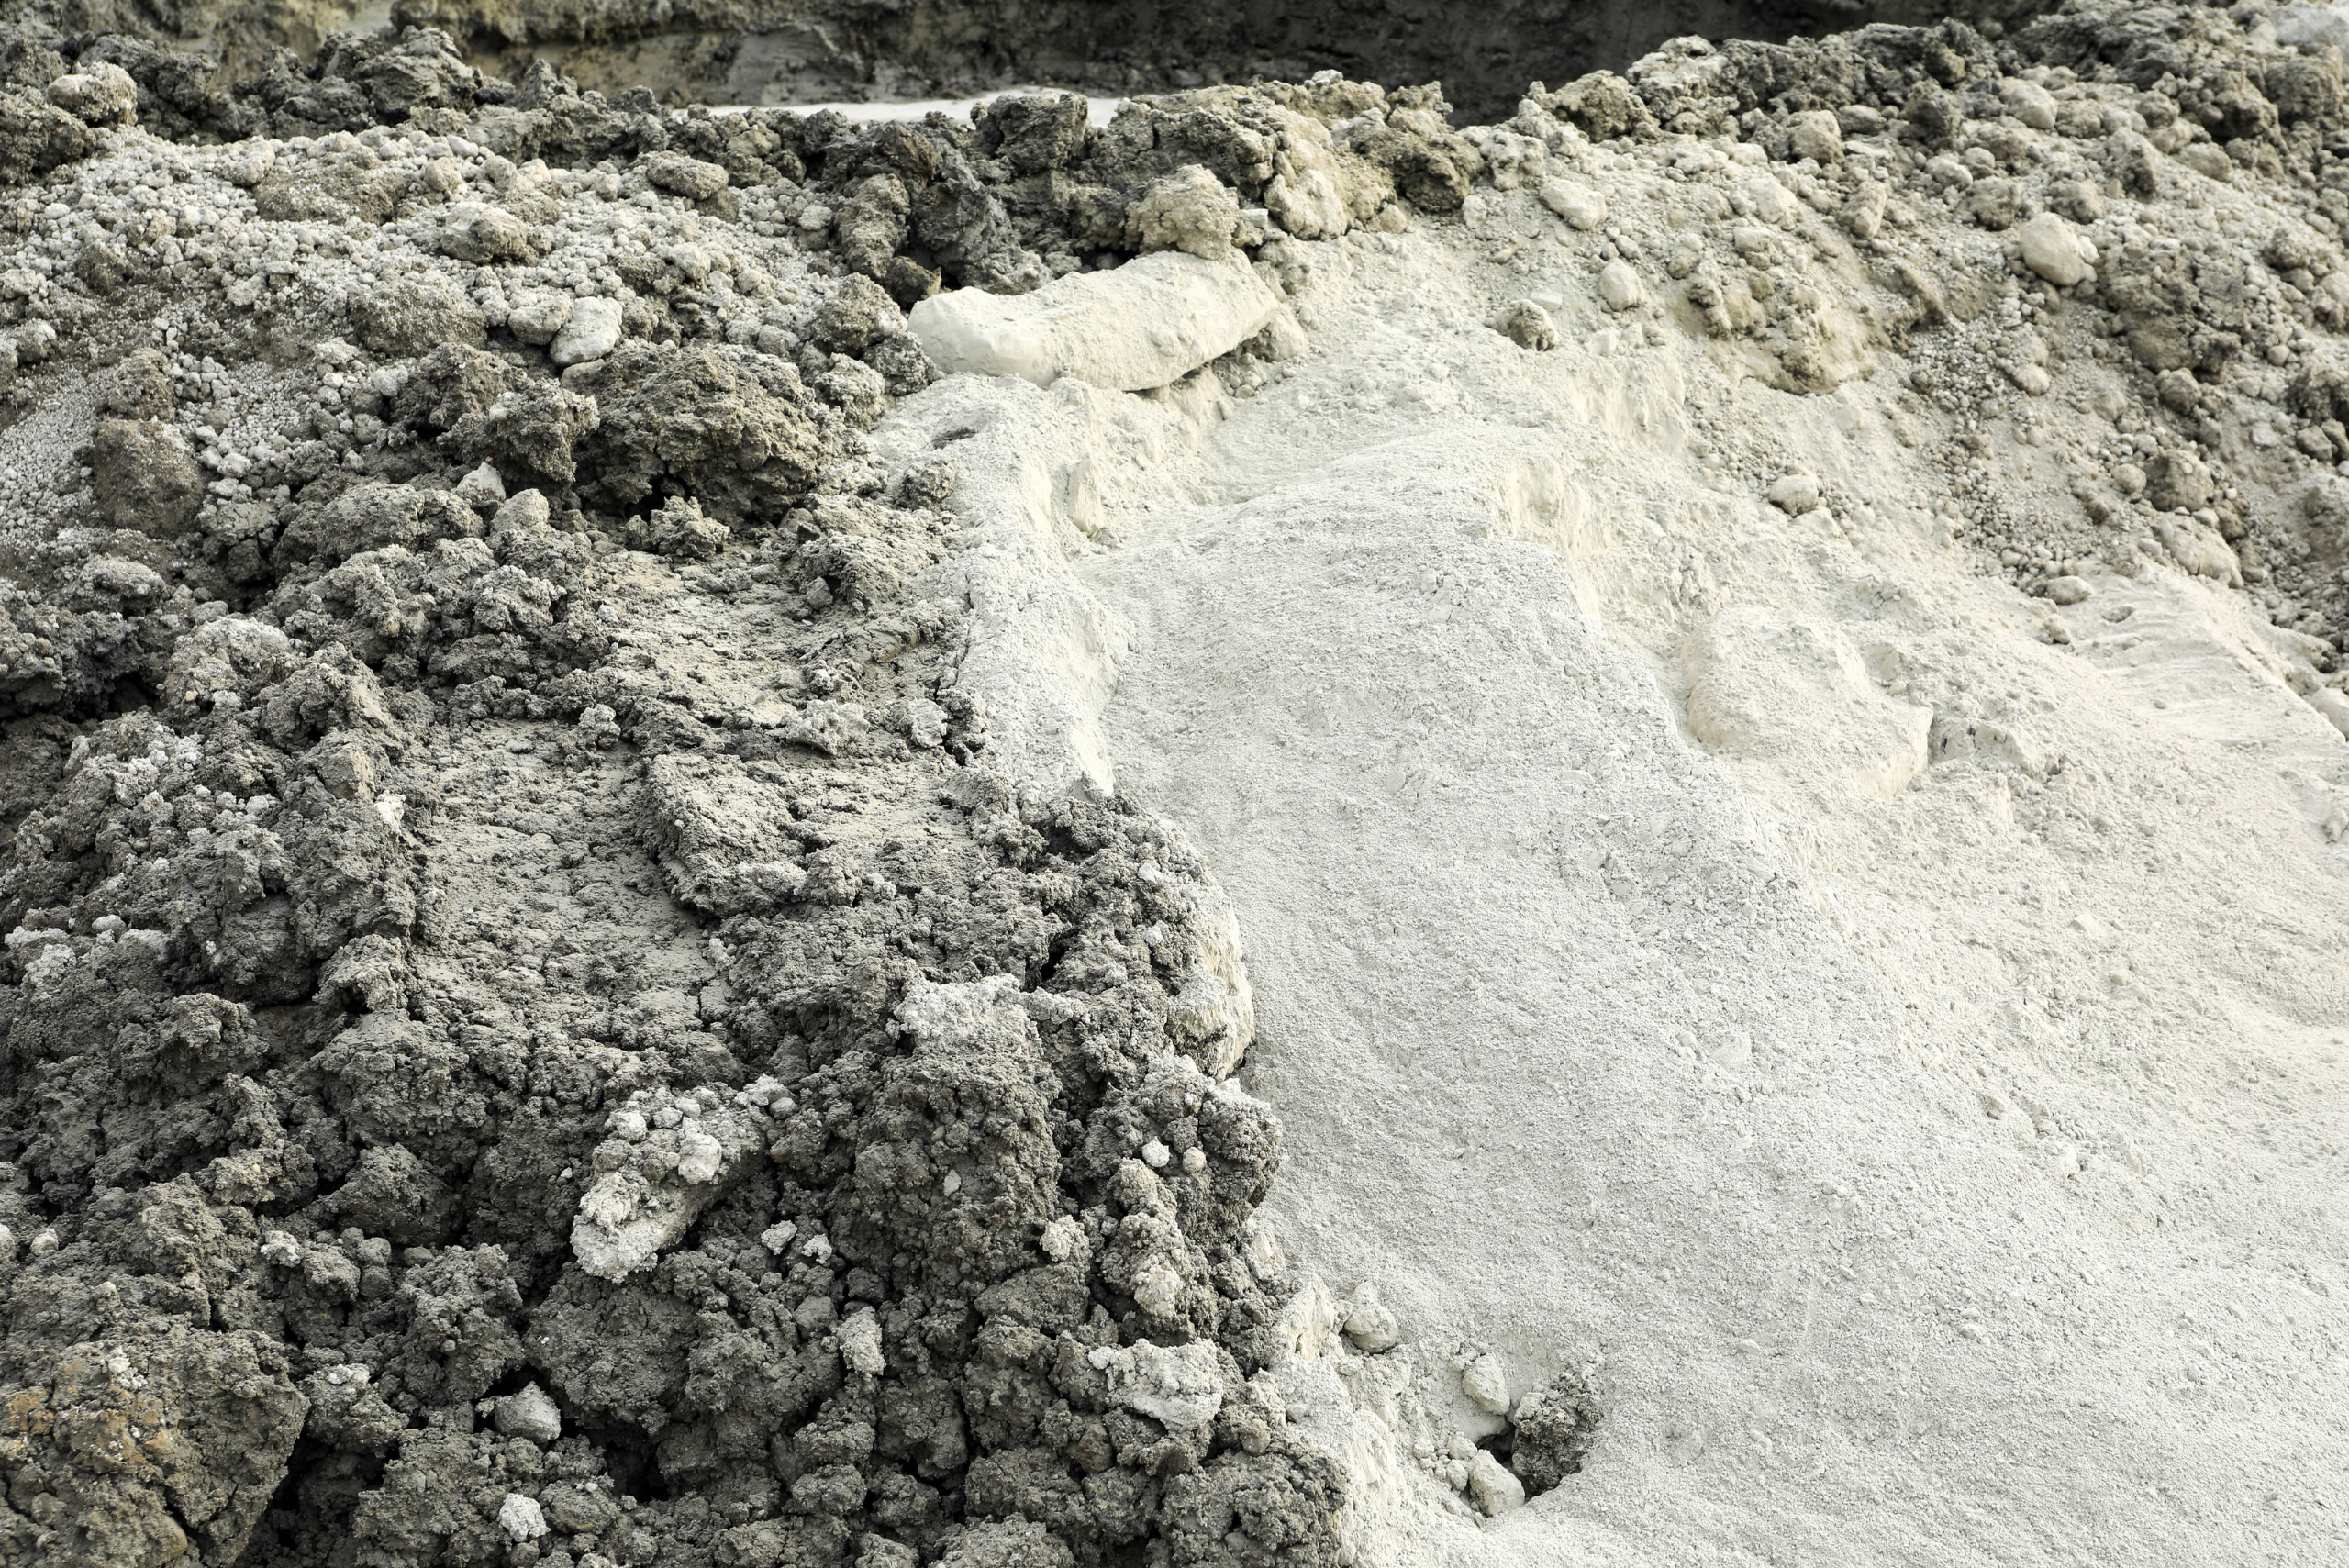 White powder spread on soil.